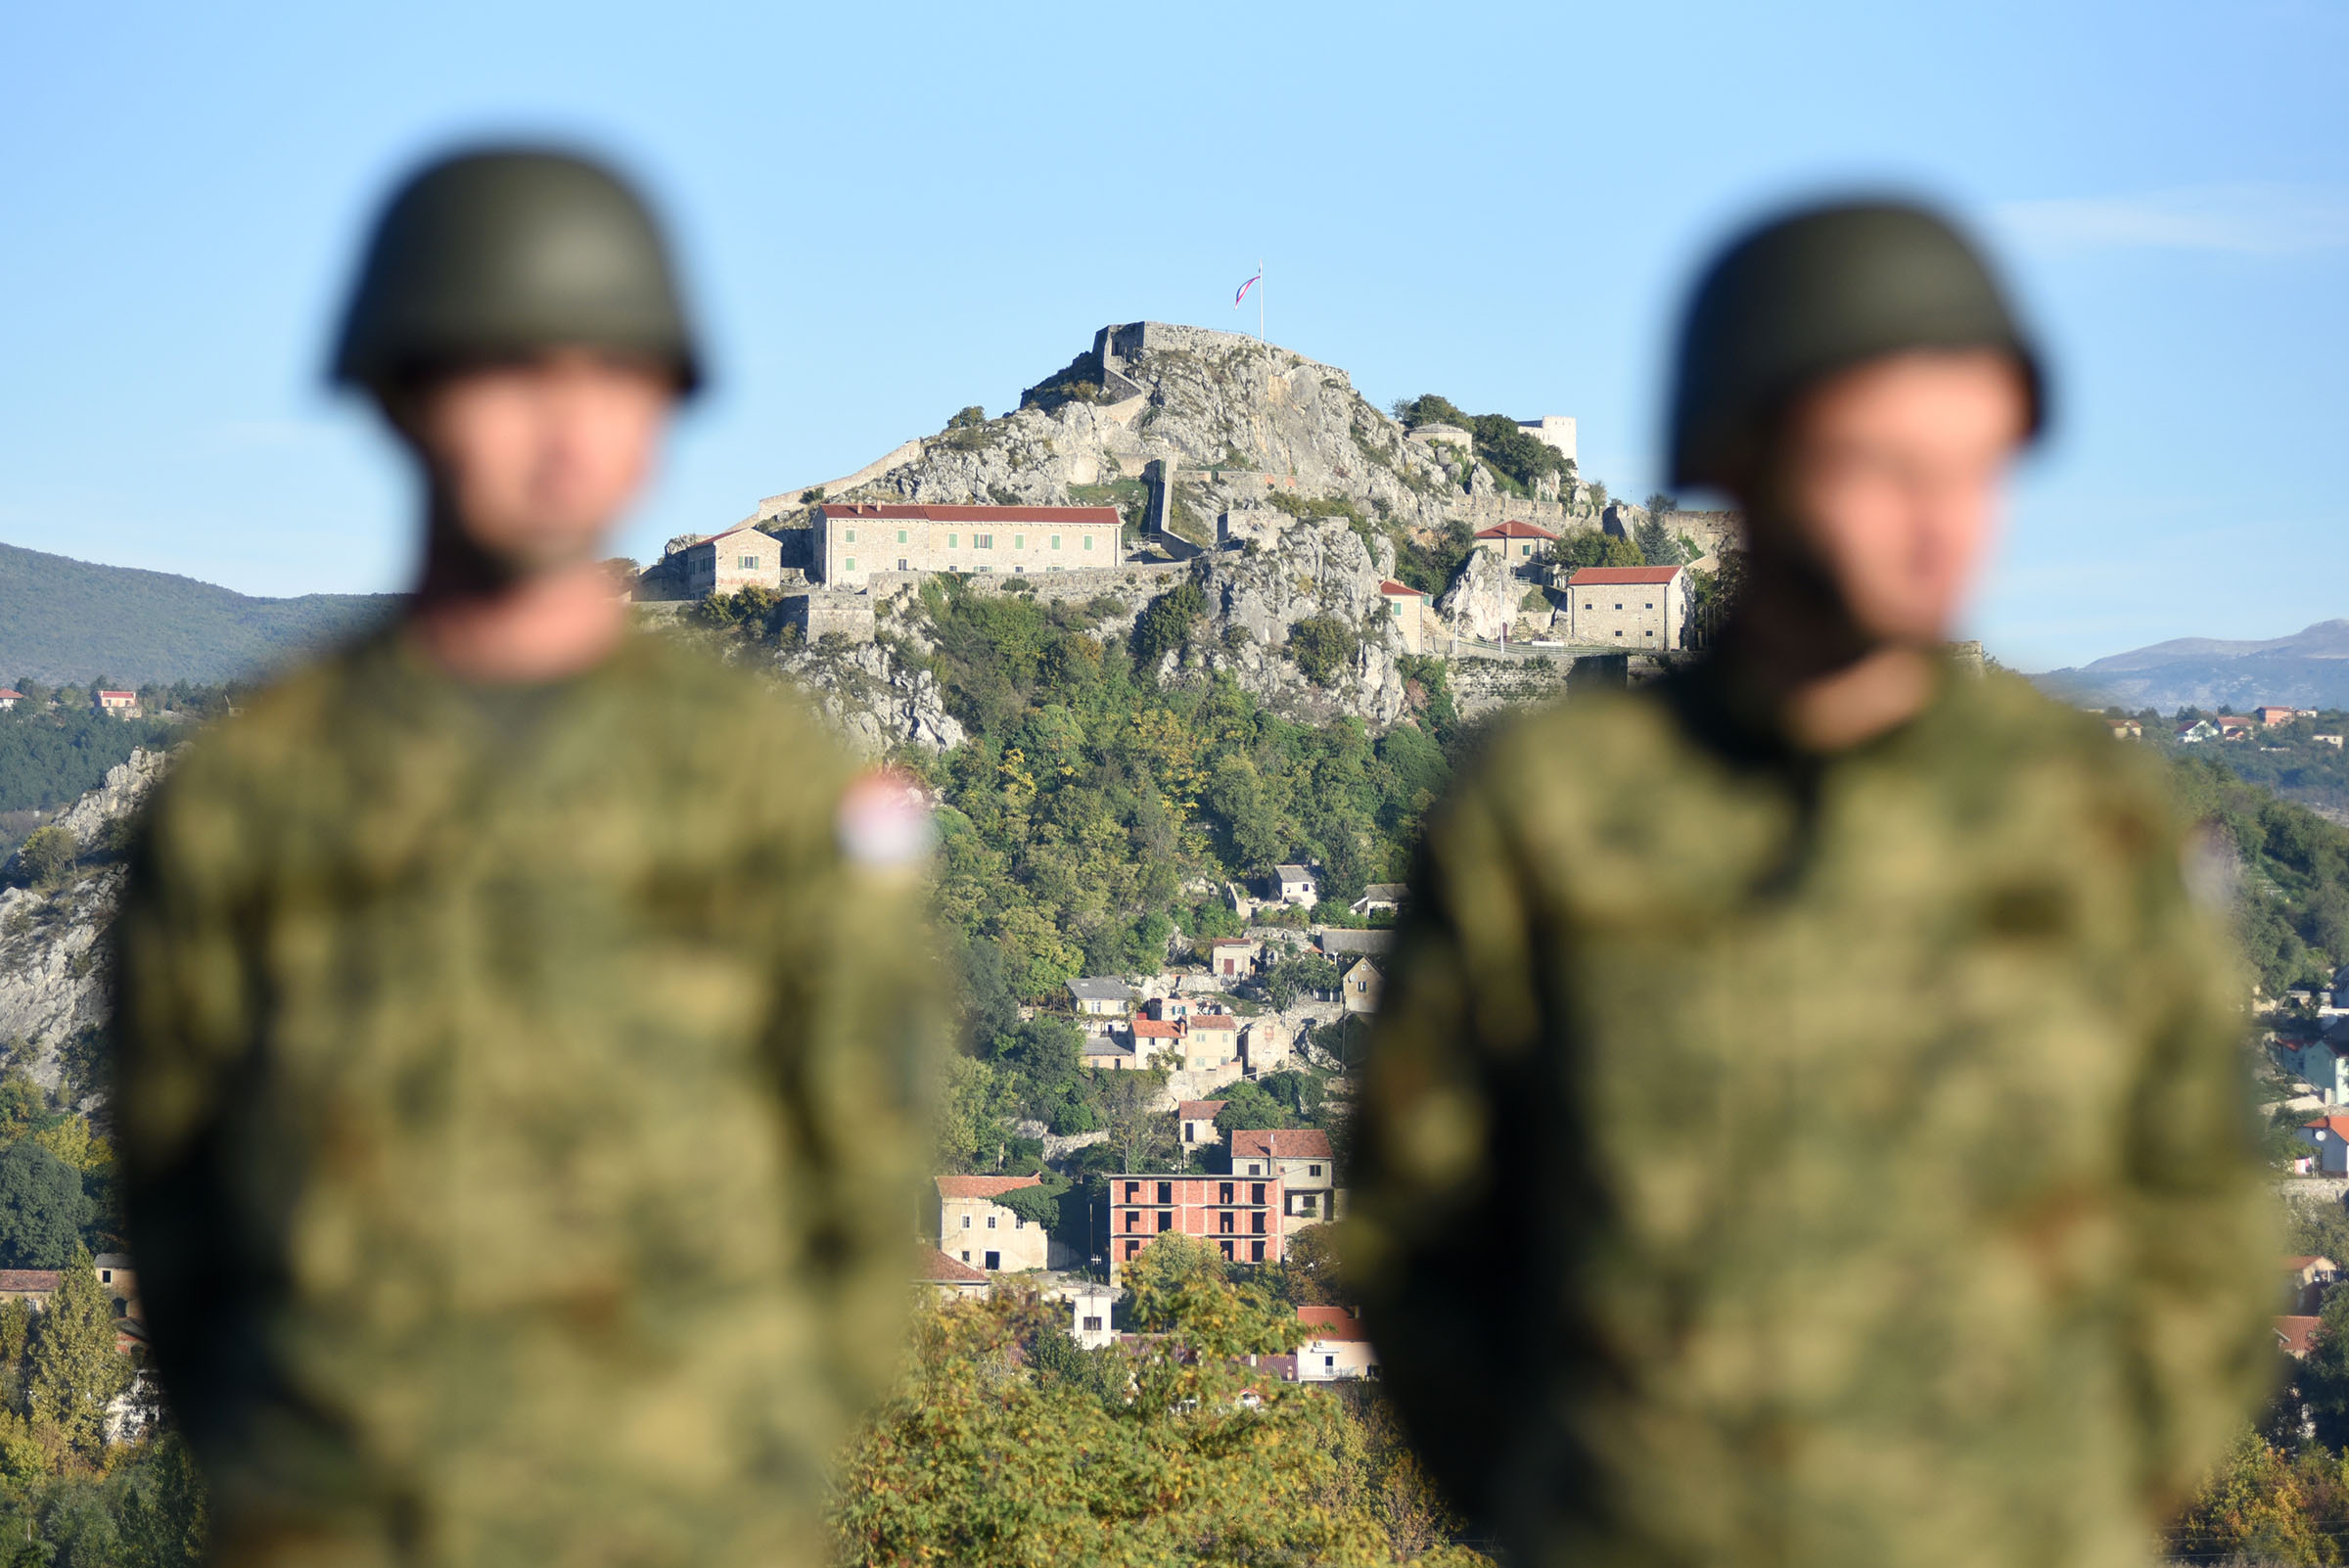 Pričuvnici Hrvatske vojske na obuci u gašenju požara